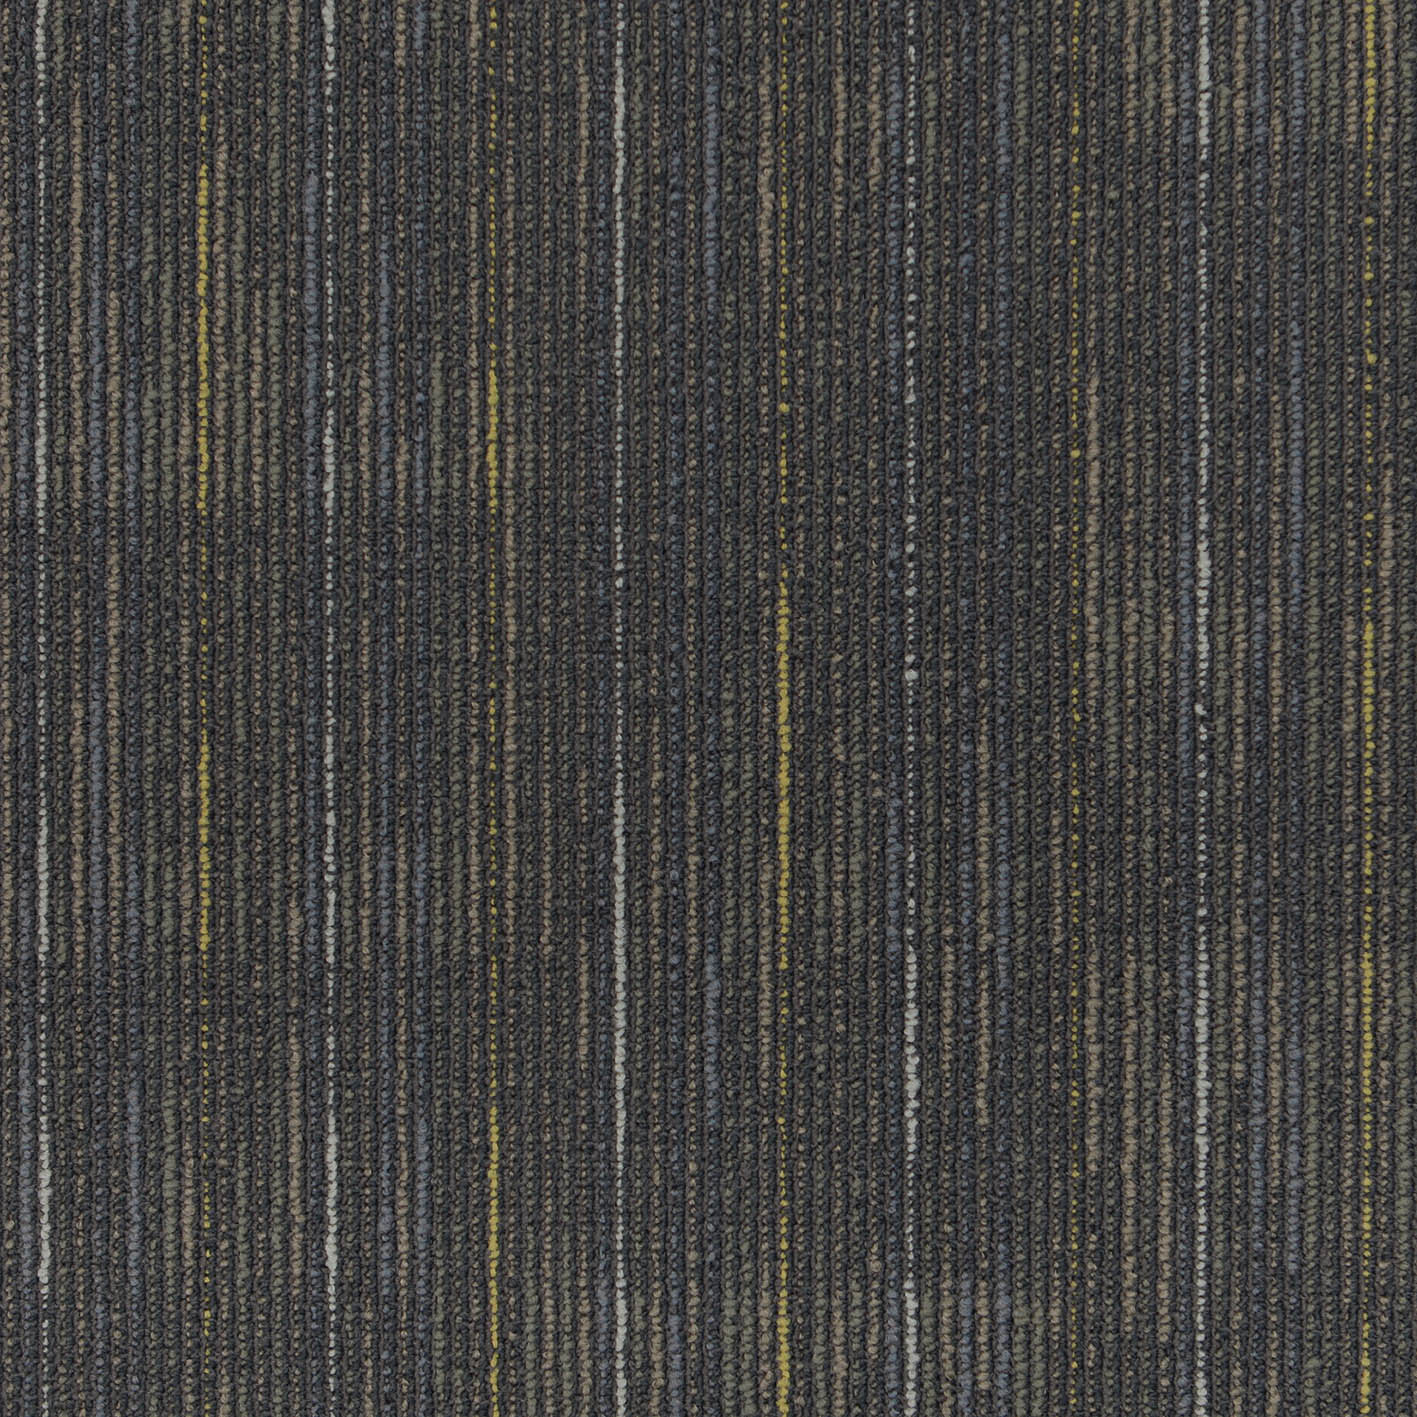 HYGGE139 Fireproof Nylon Material Carpet Tiles Factory